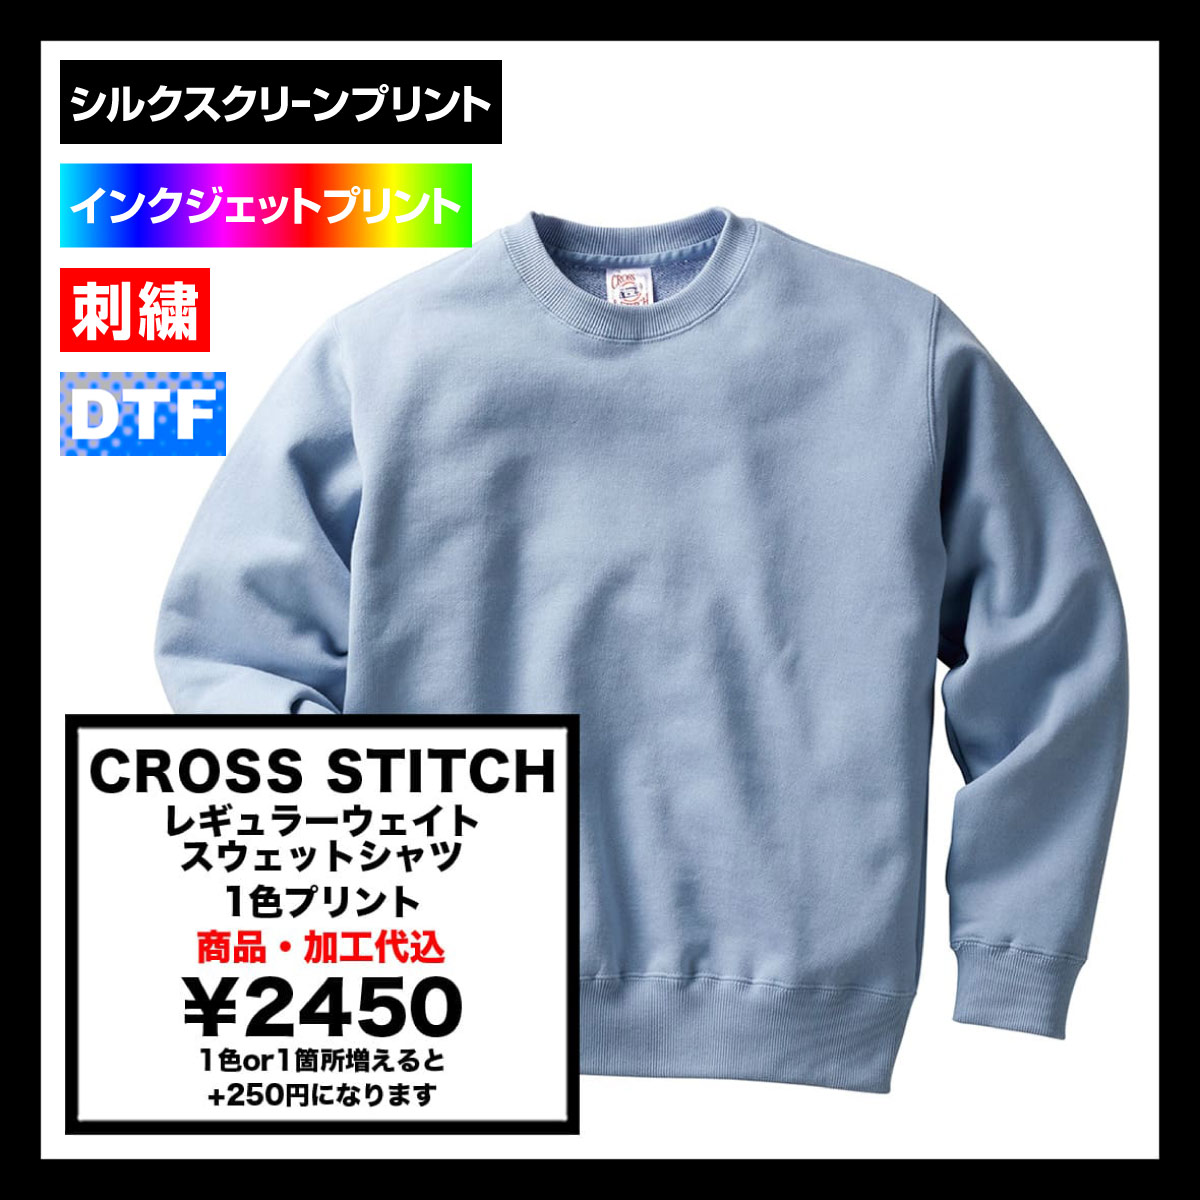 CROSS STITCH クロススティッチ 10.0 oz レギュラーウェイト スウェットシャツ (品番SW2210)